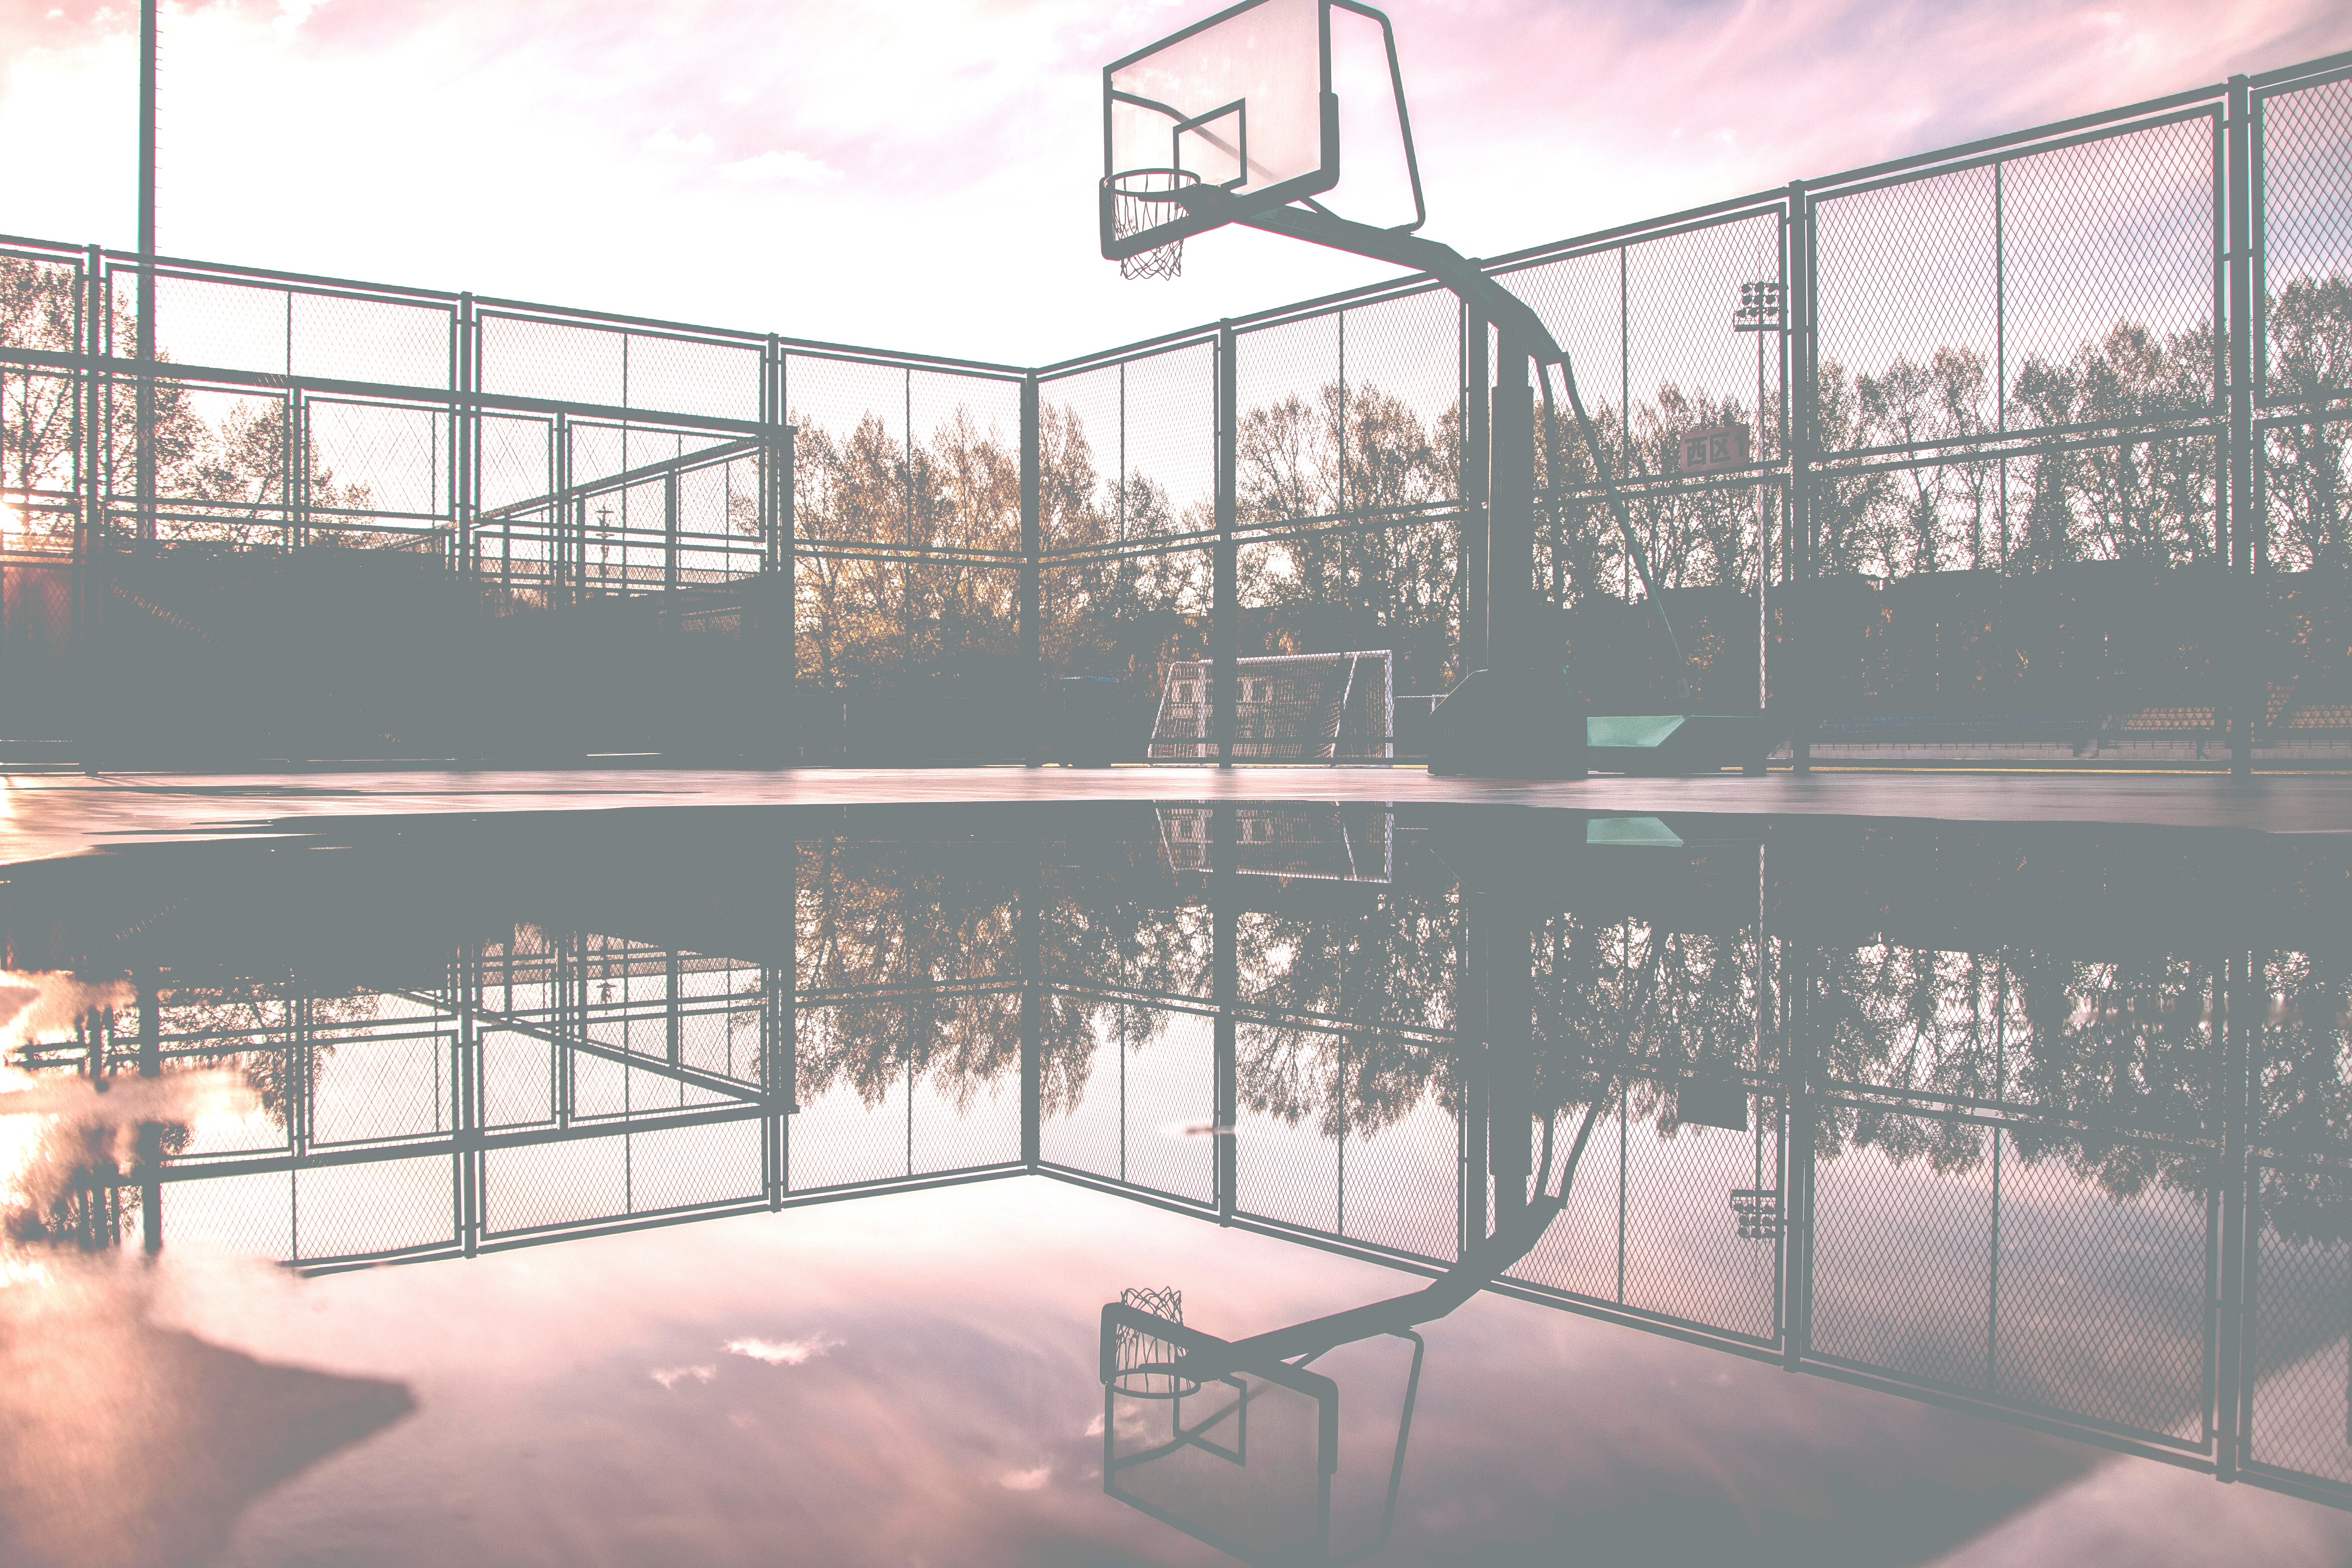 Basketball Hoop Reflecting on Water